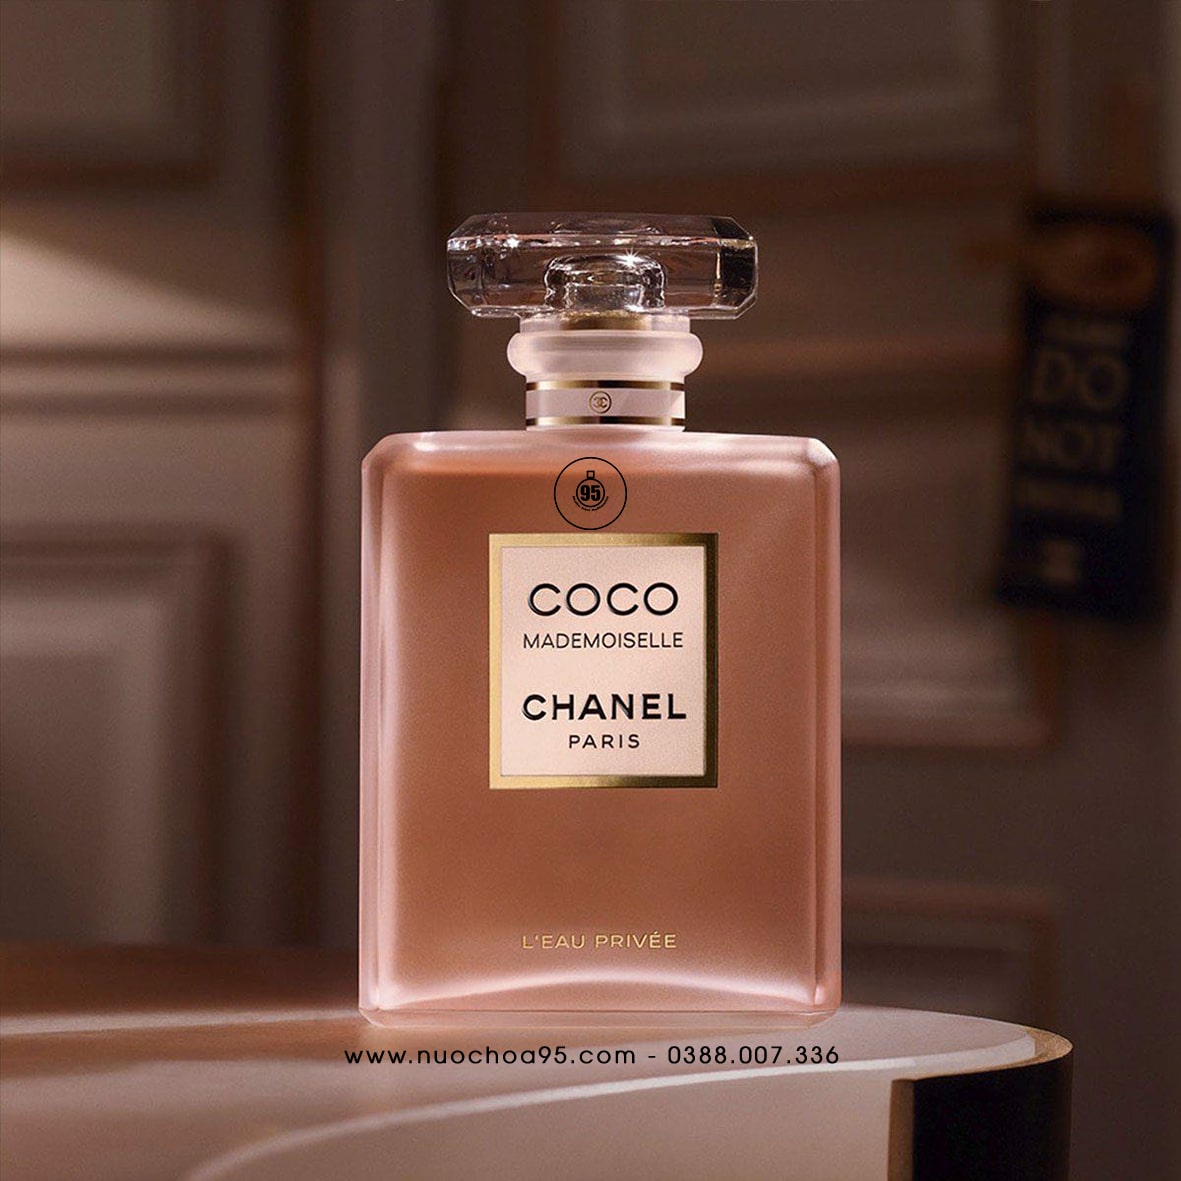 Nước hoa Chanel Coco Mademoiselle L’eau Privee  - Ảnh 1